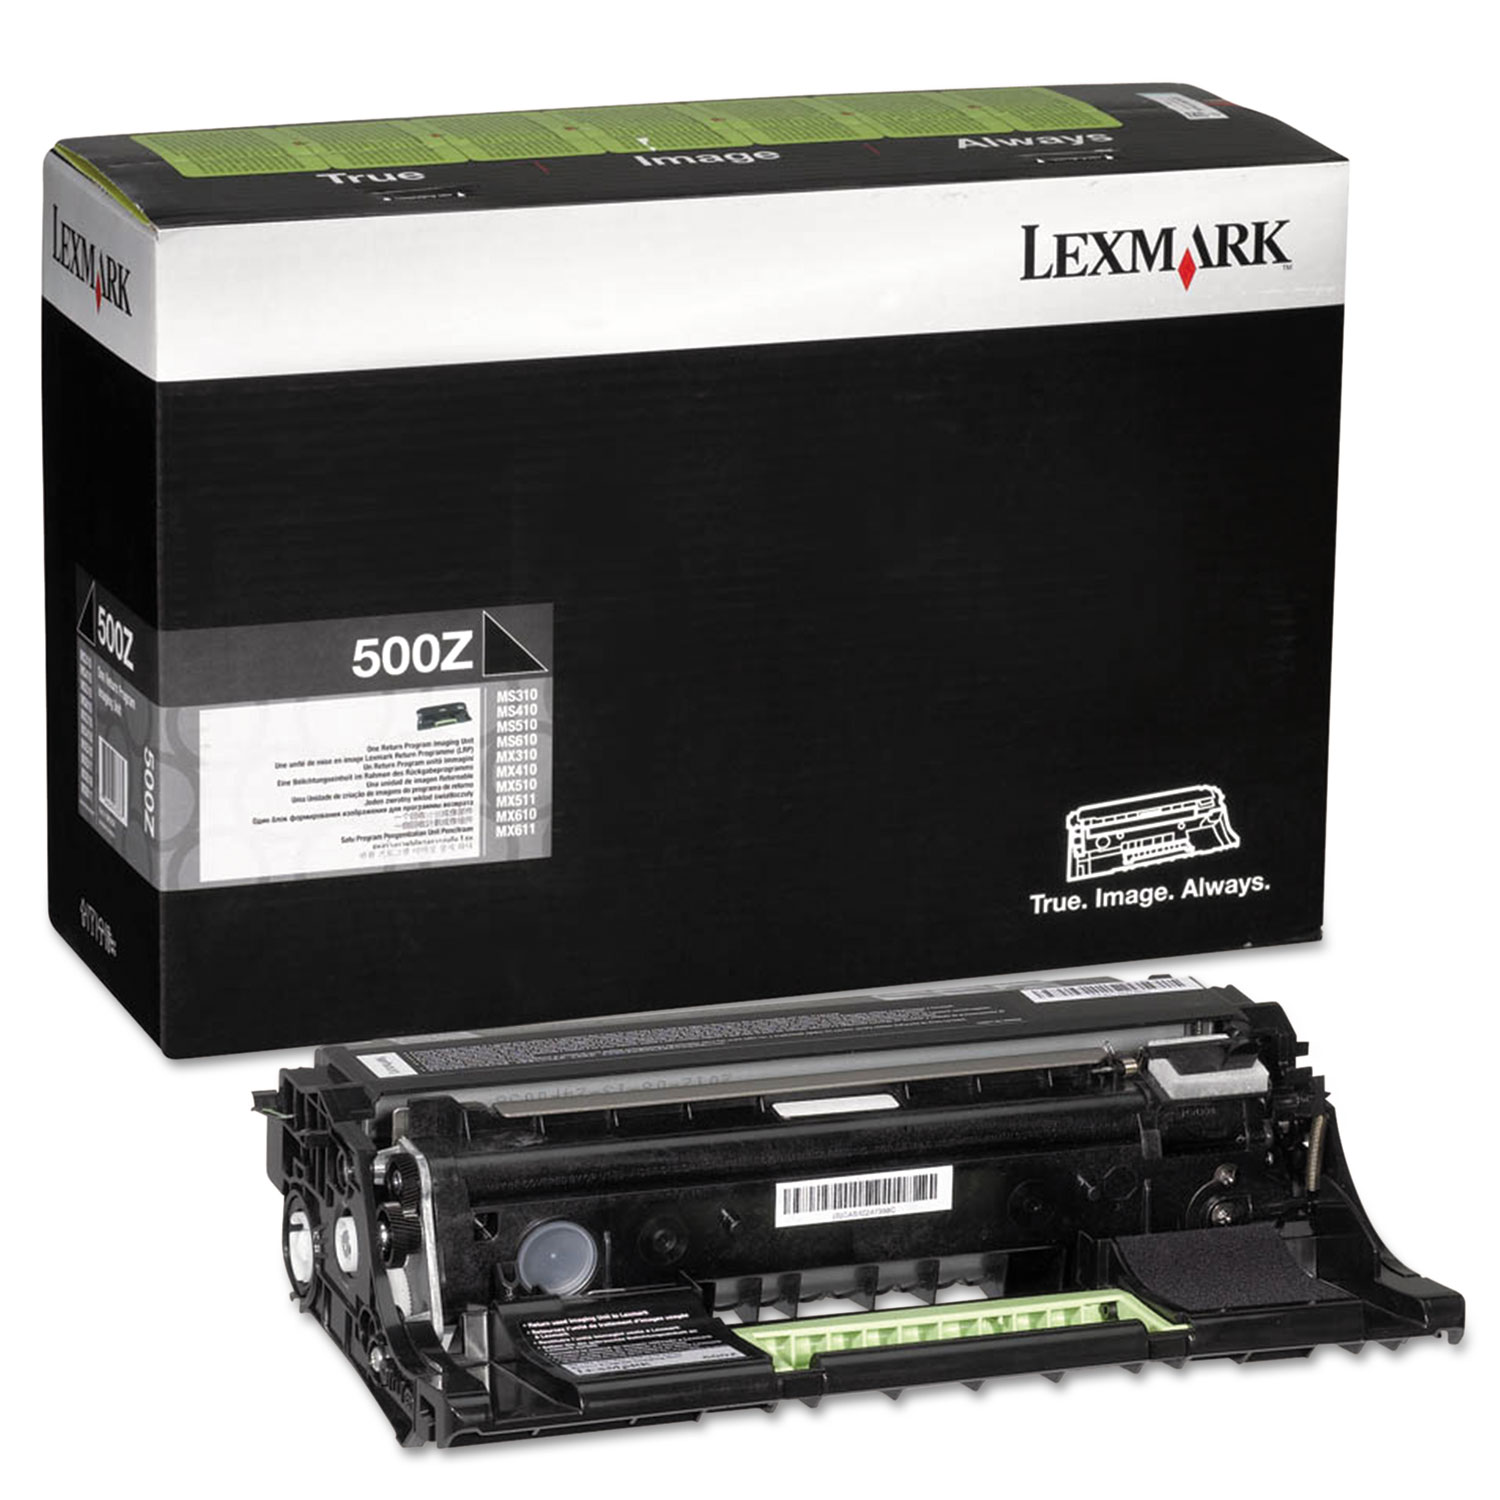  Lexmark 50F0Z00 50F0Z00 Drum Unit, Black (LEX50F0Z00) 